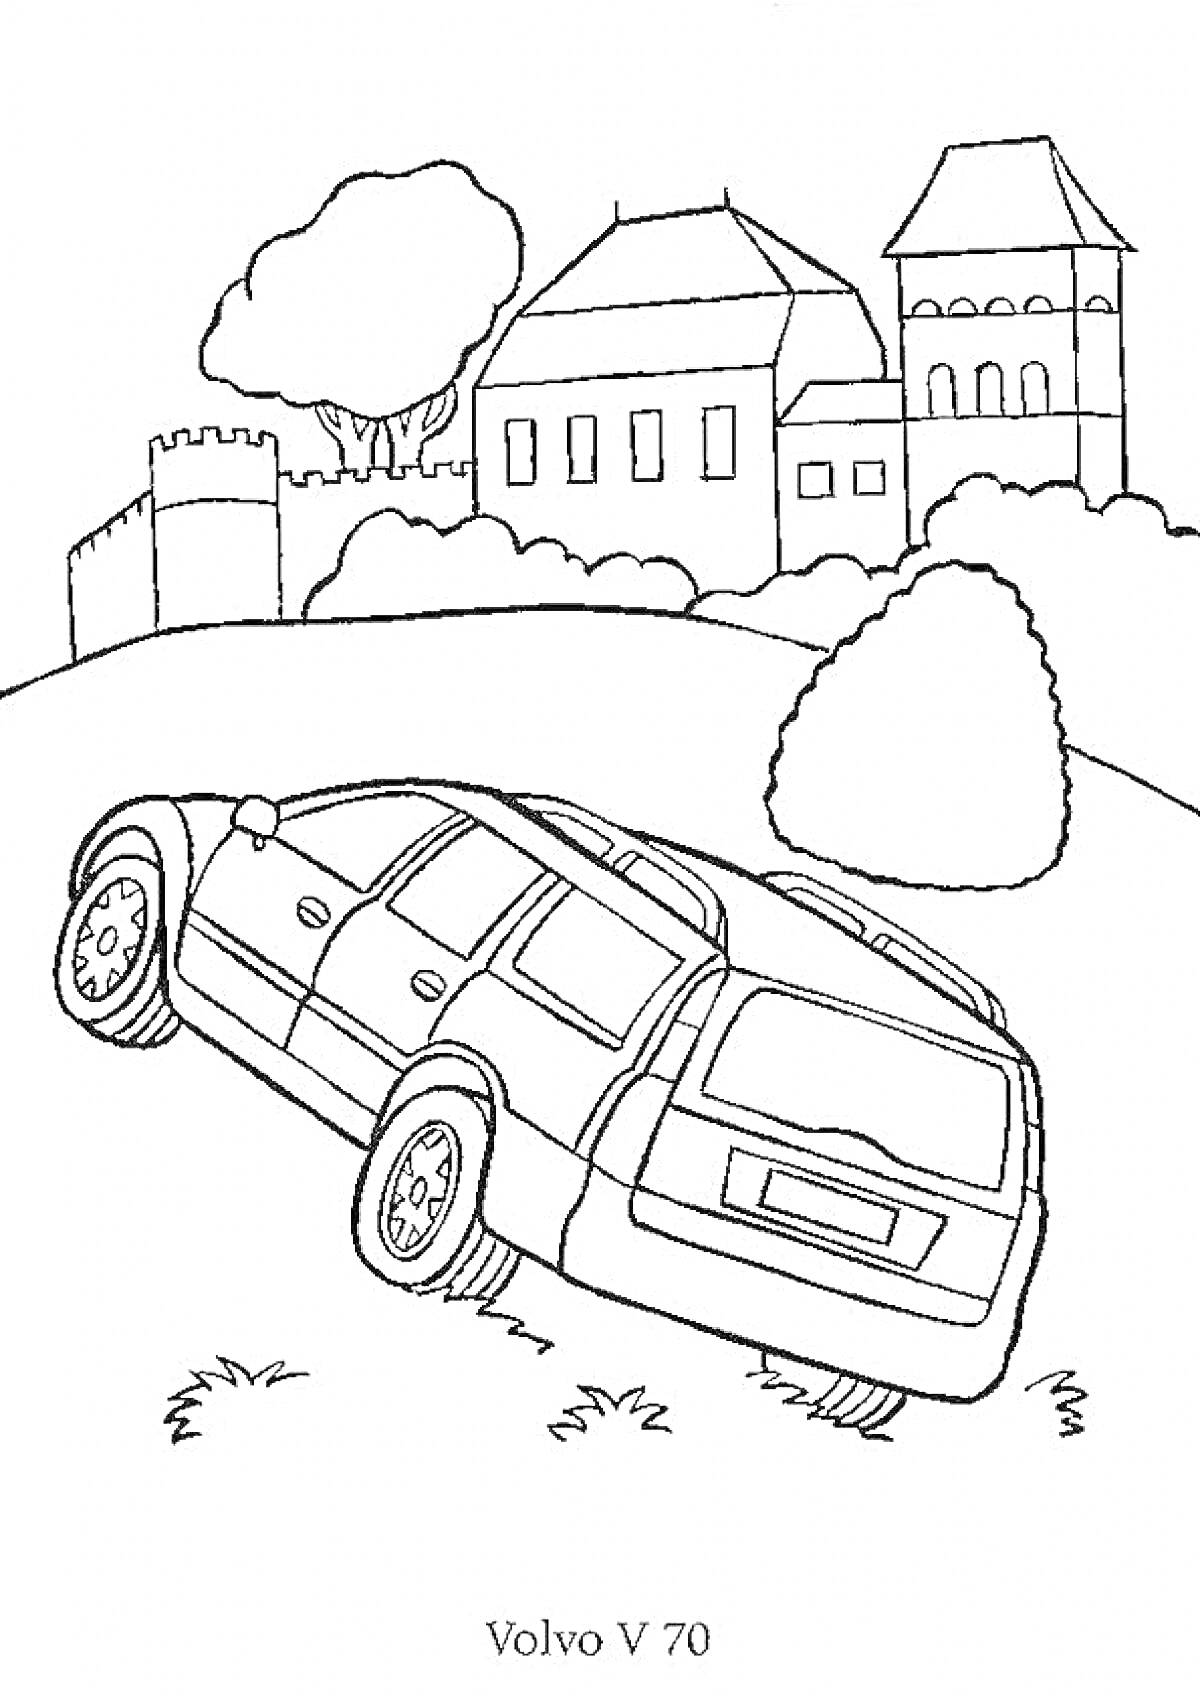 Раскраска Volvo V 70 на фоне замка, деревьев и кустов